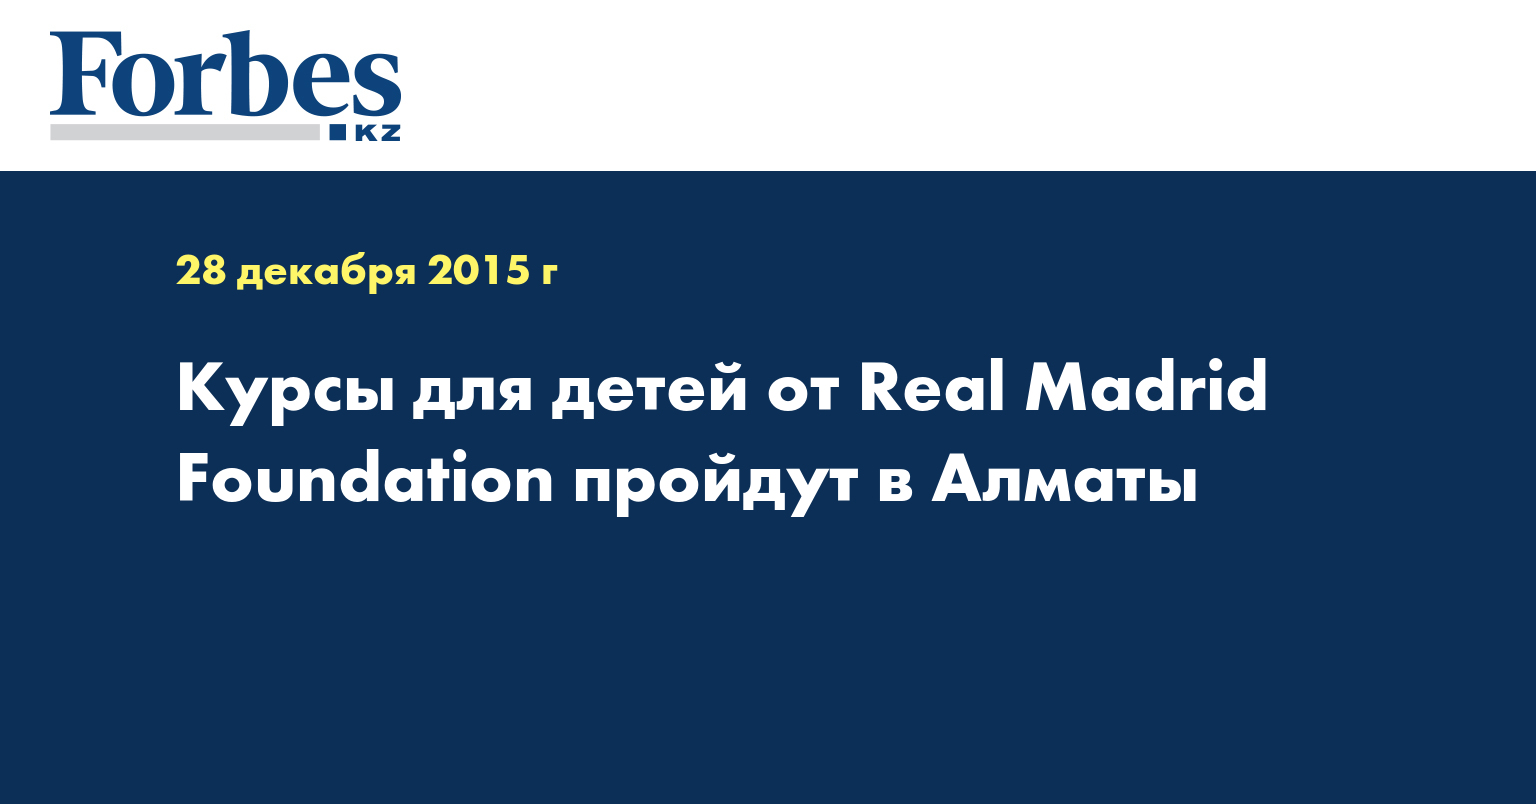 Курсы для детей от Real Madrid Foundation пройдут в Алматы